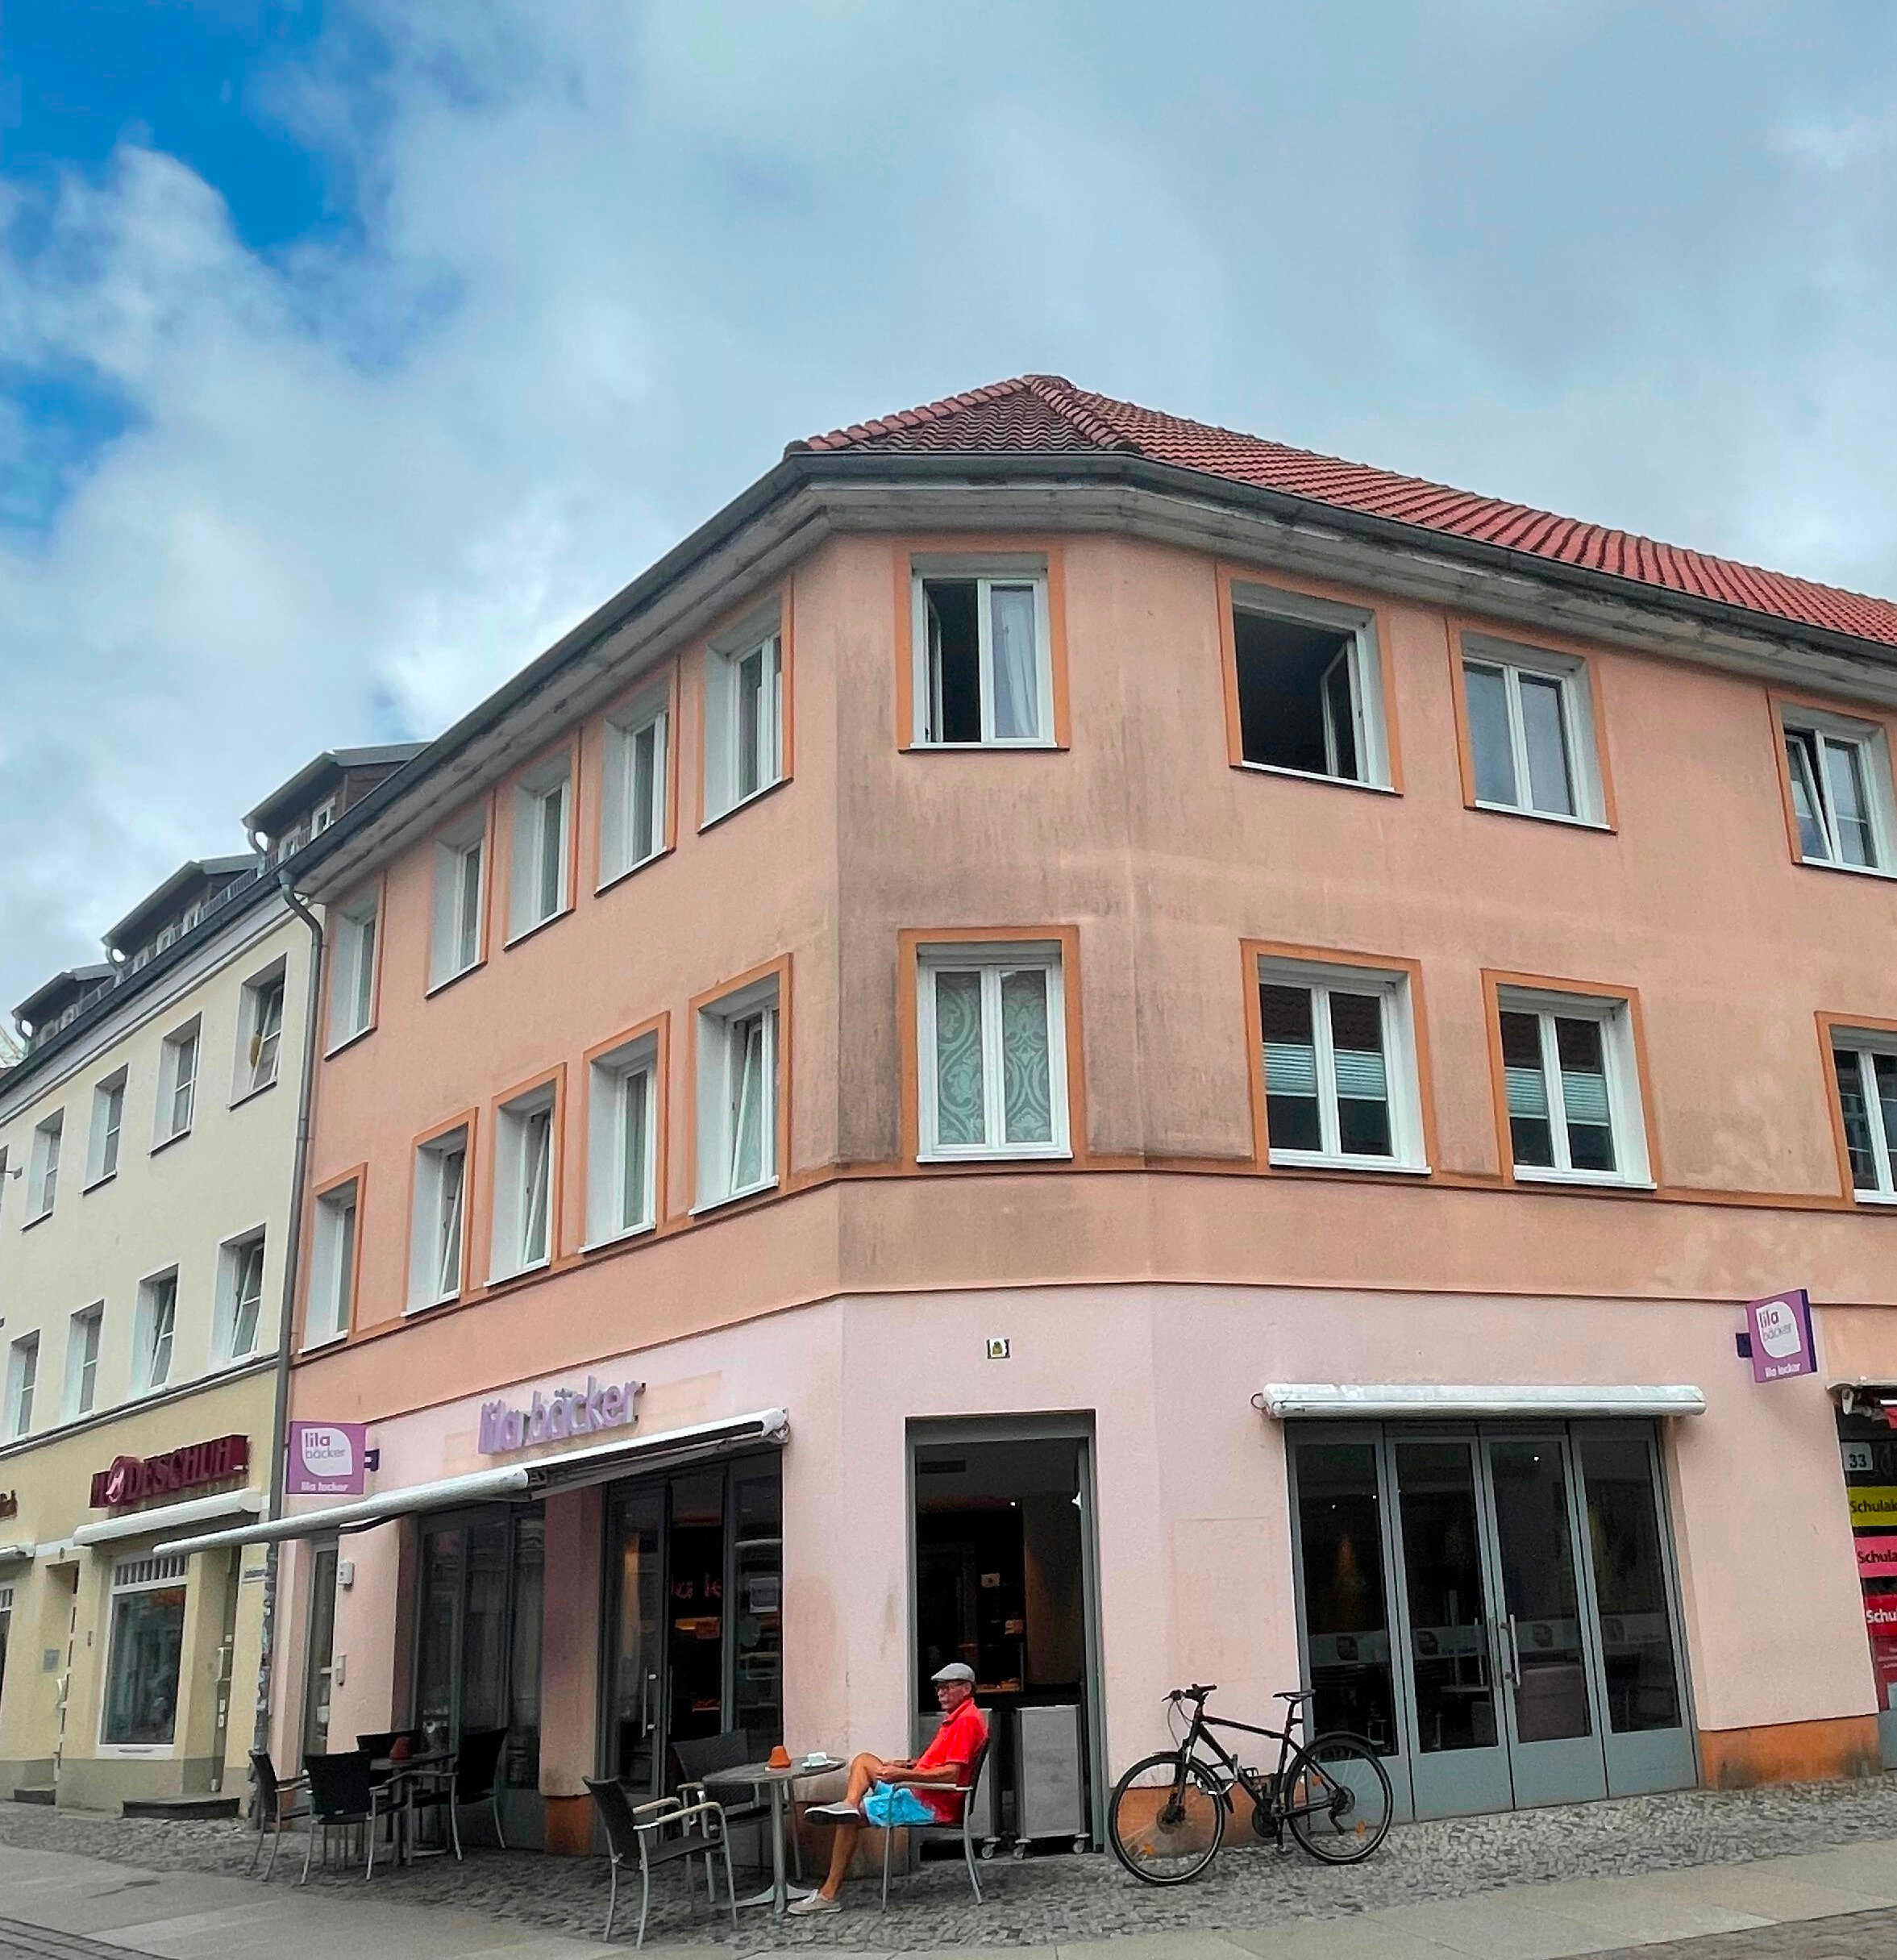 Laden zur Miete 4.800 € 115 m²<br/>Verkaufsfläche Altstadt Stralsund 18437